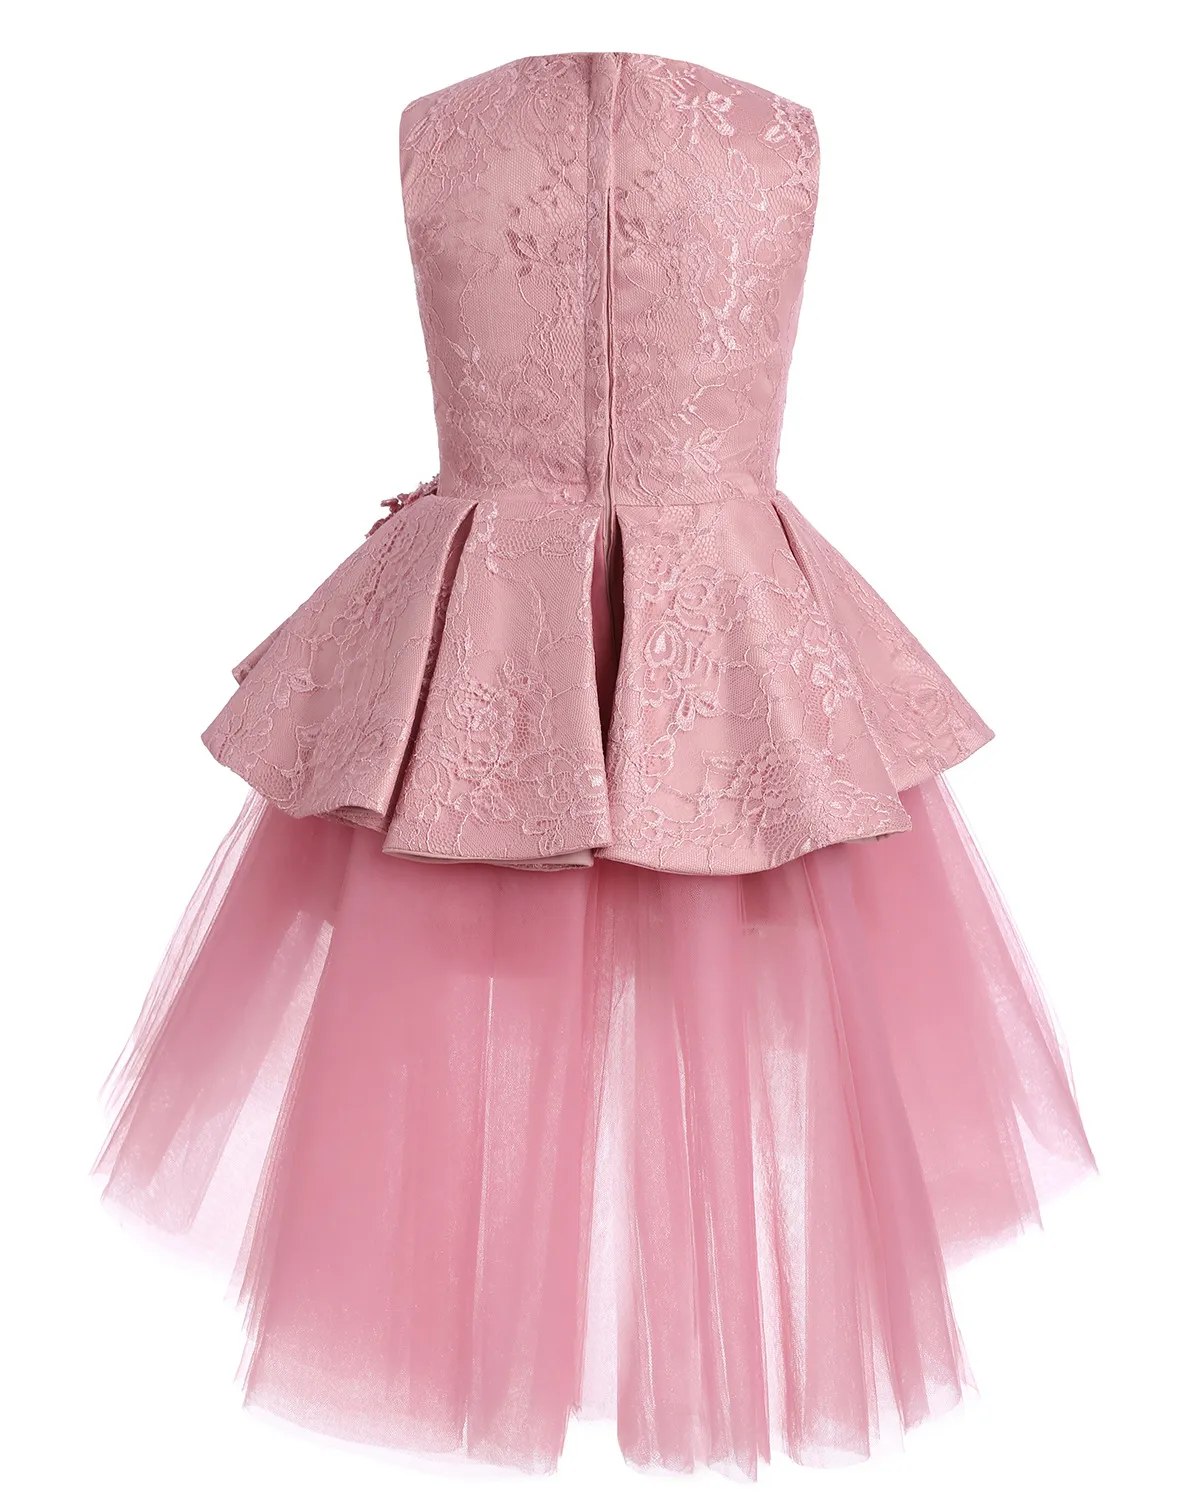 かわいいピンクのページェントのドレスジュエルネックノースリーブレースショートティアードフリルフラワーガールズチュールスカート誕生日パーティー本物のイメージ